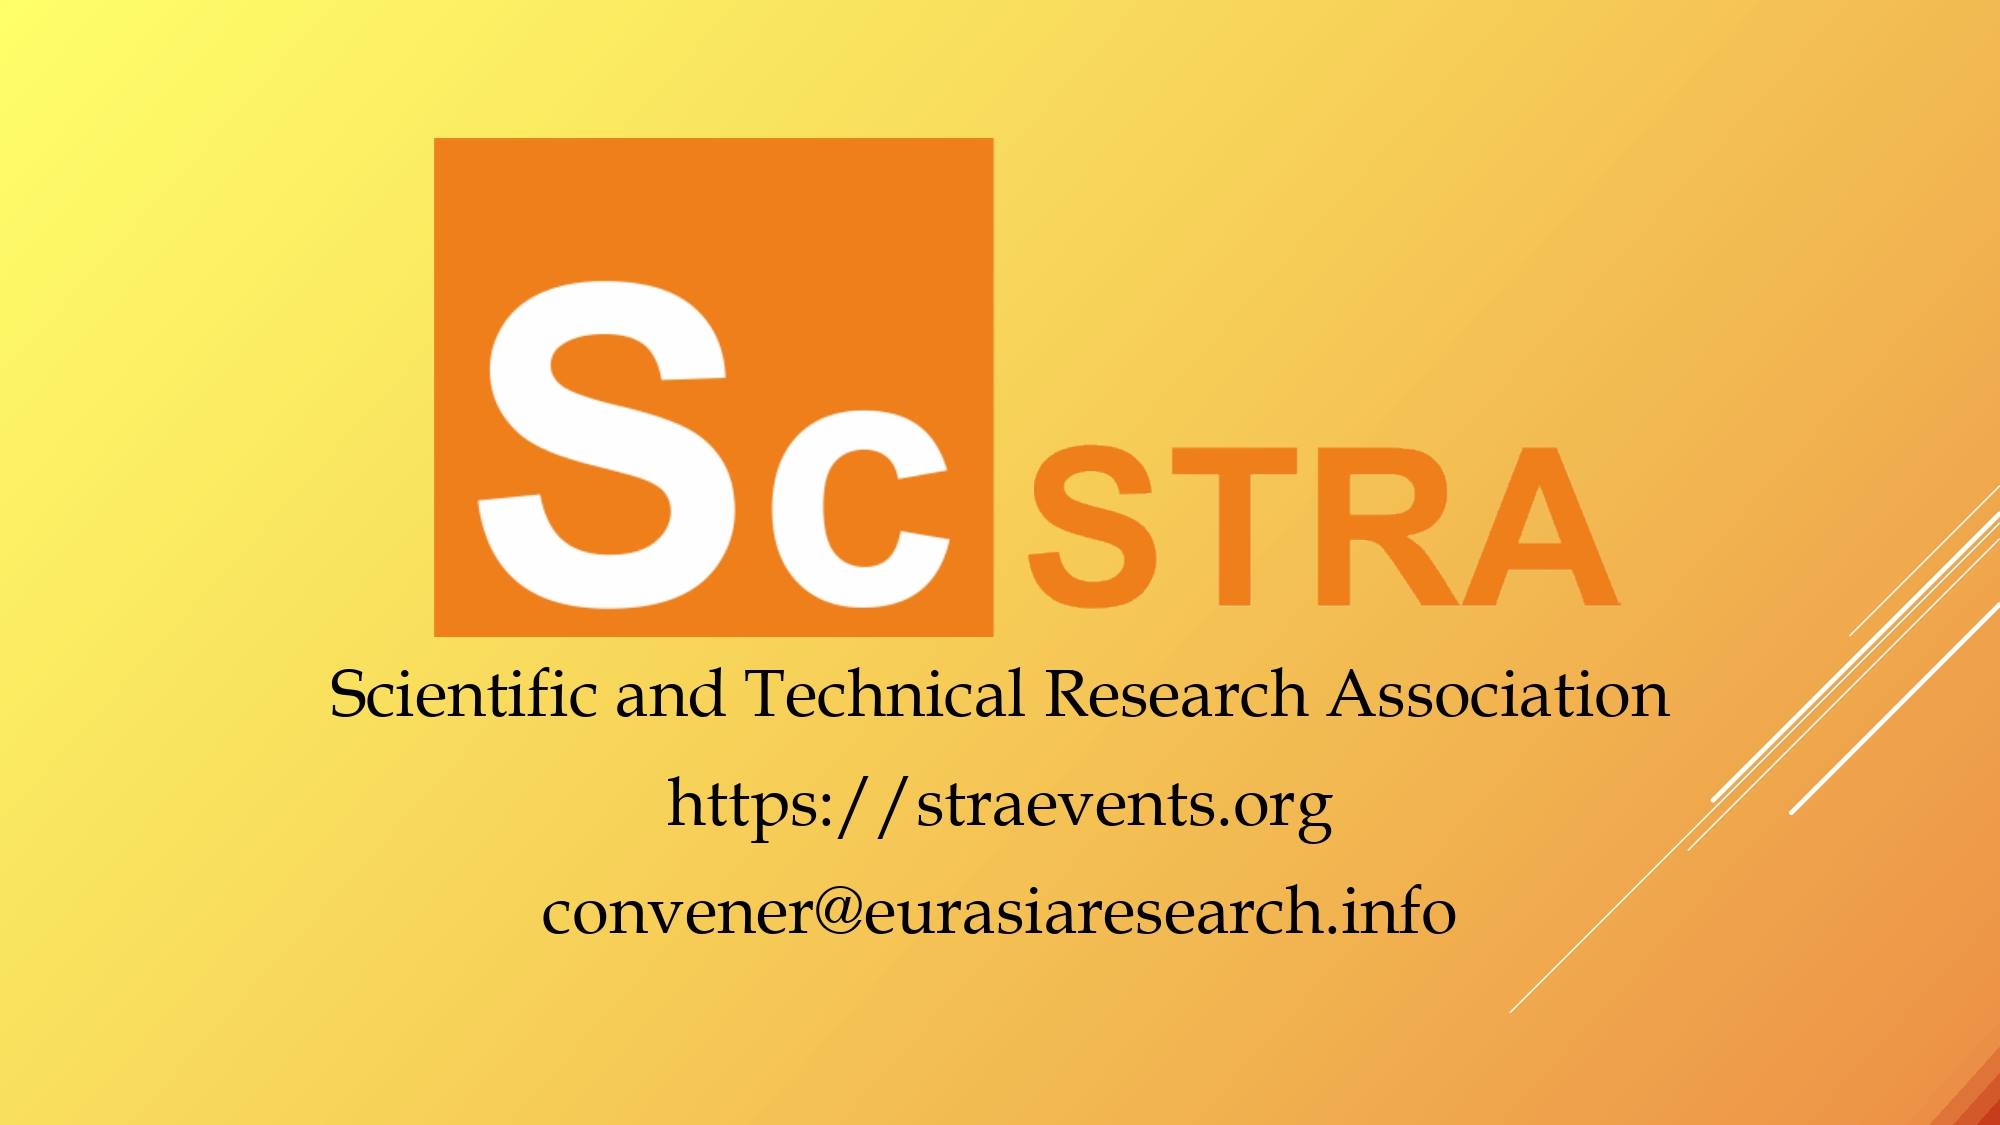 ICSTR Paris – International Conference on Science & Technology Research, 22-23 April 2021, Paris, France